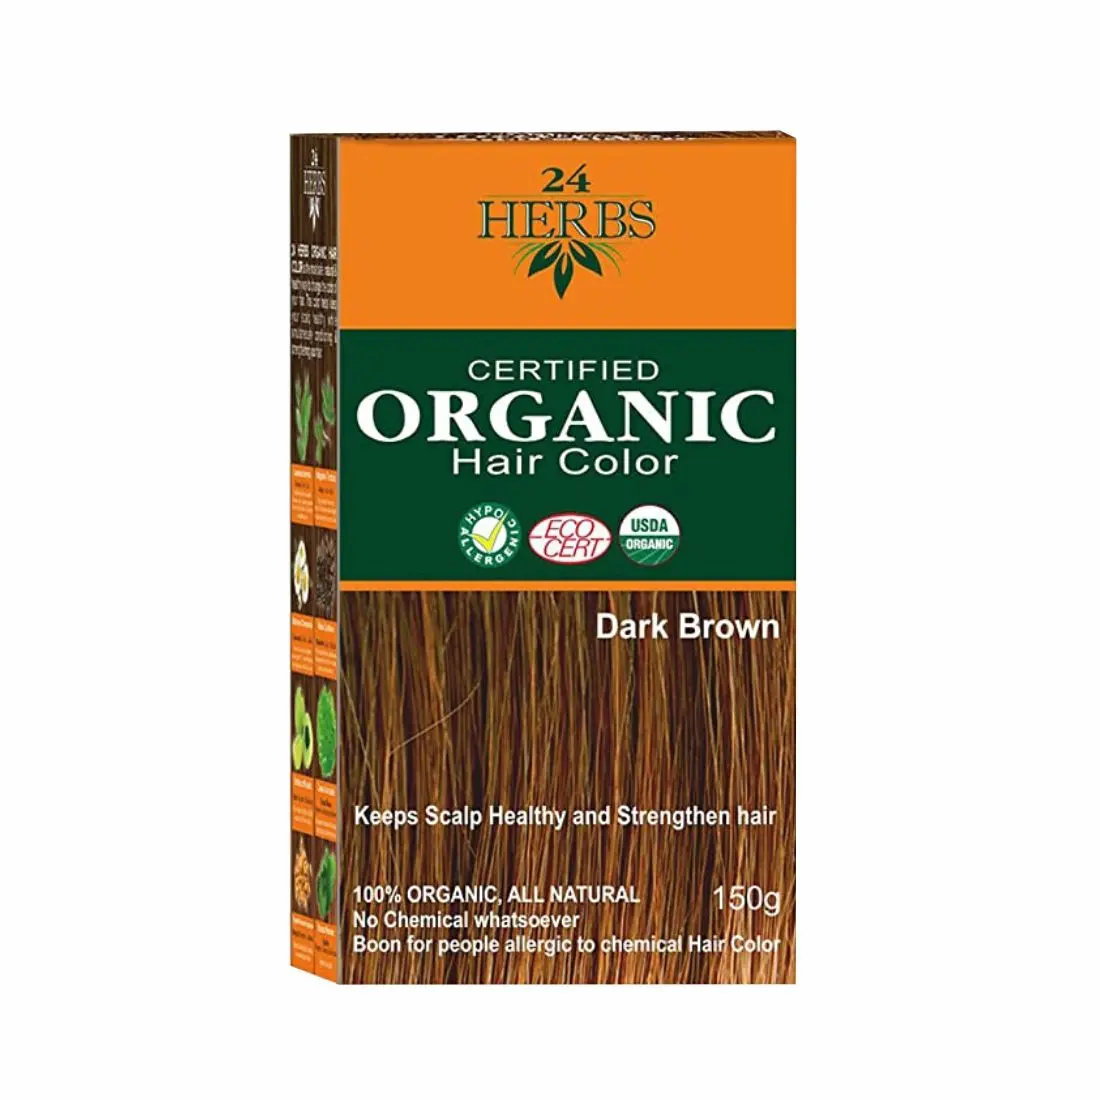 24 HERBS Certified Organic Hair Color Dark Brown- (150 g)